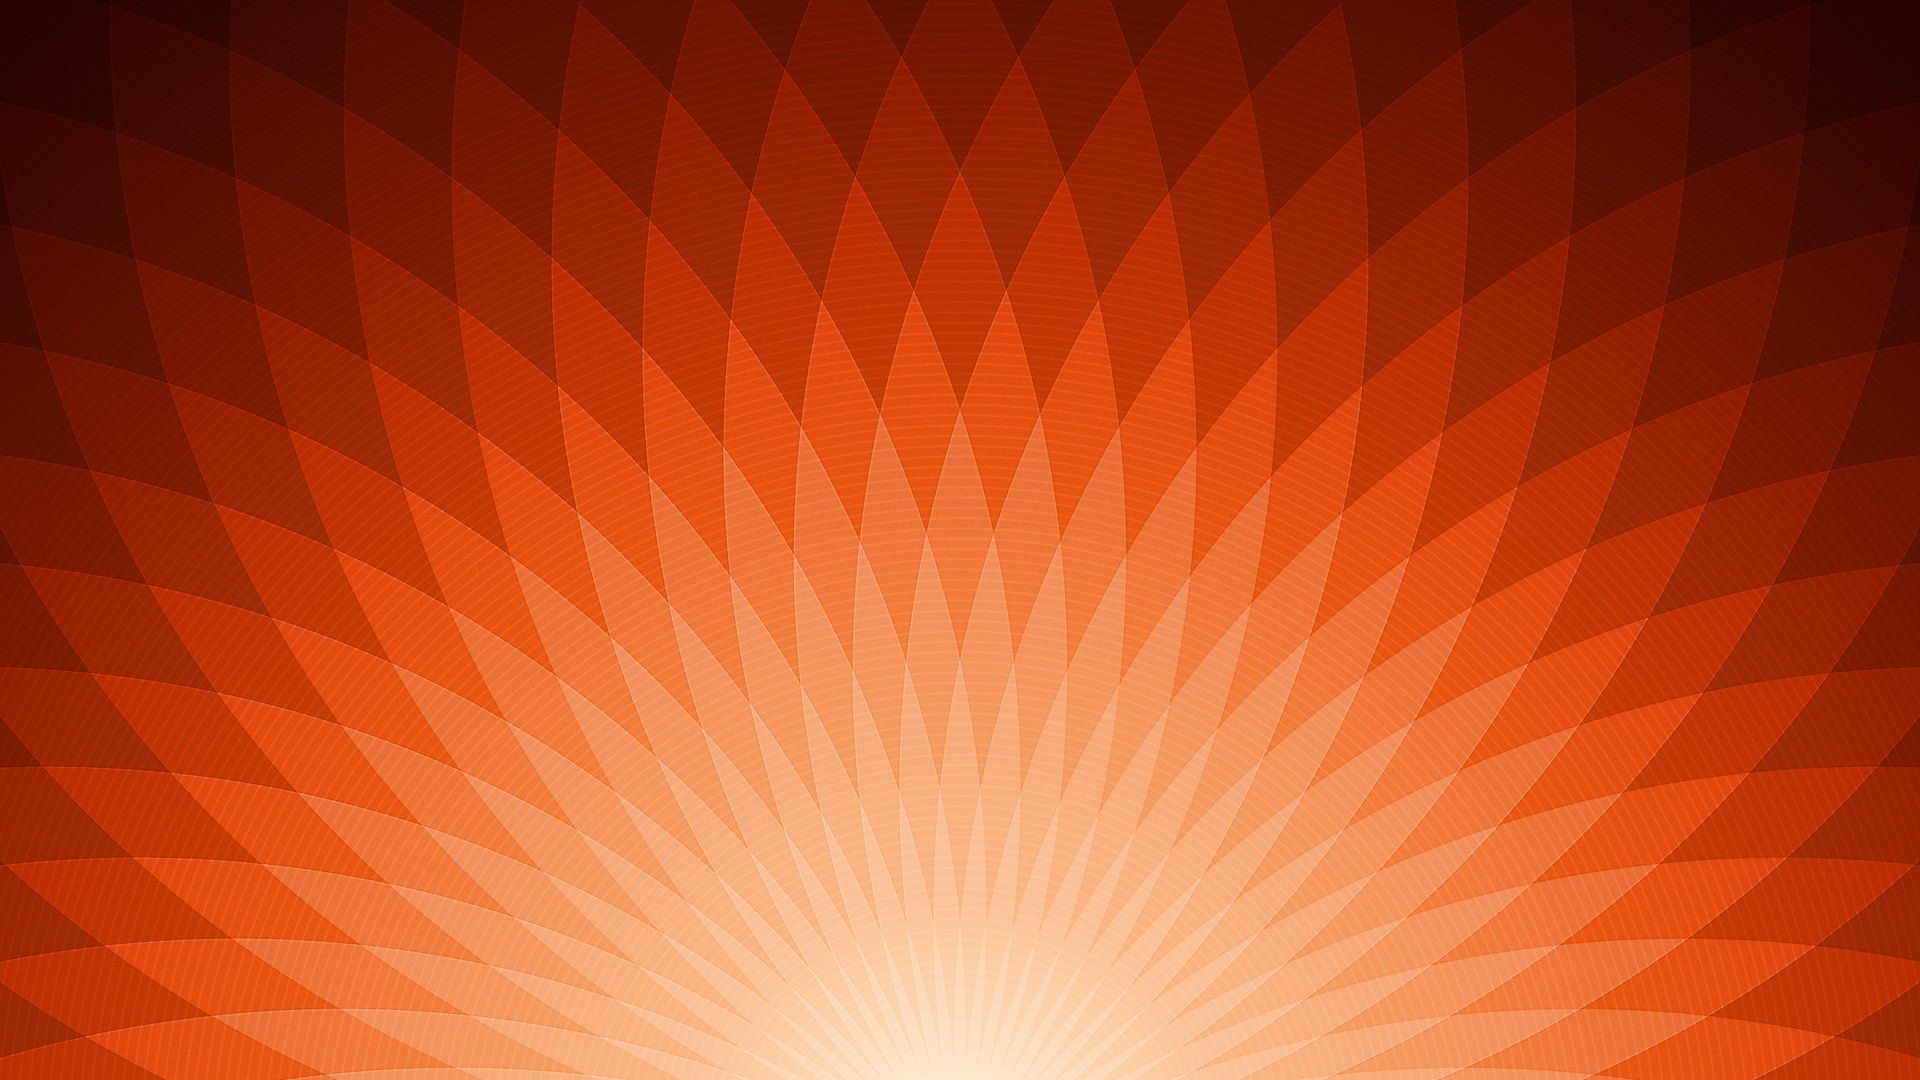 Orange Computer Wallpapers, Desktop Backgrounds | 1280x960 | ID:85393